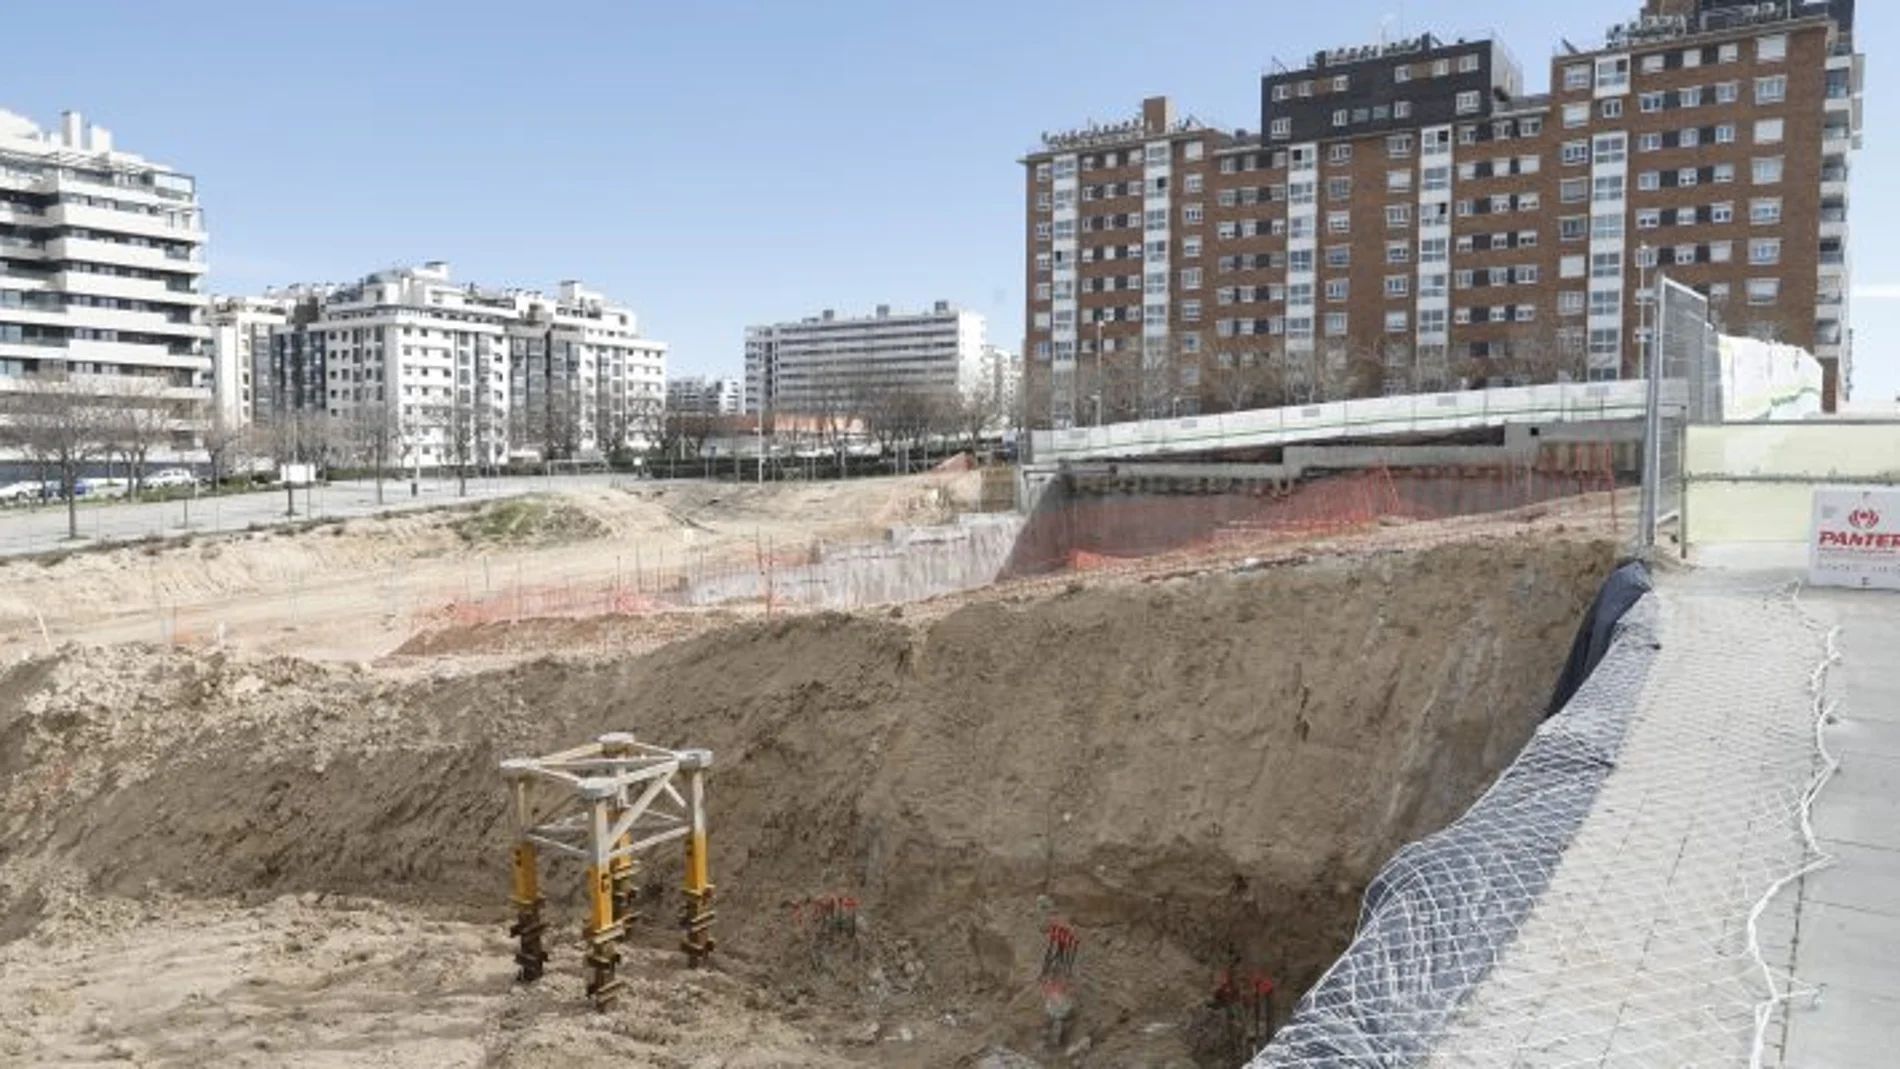 Imagen de construcción de viviendas en Madrid